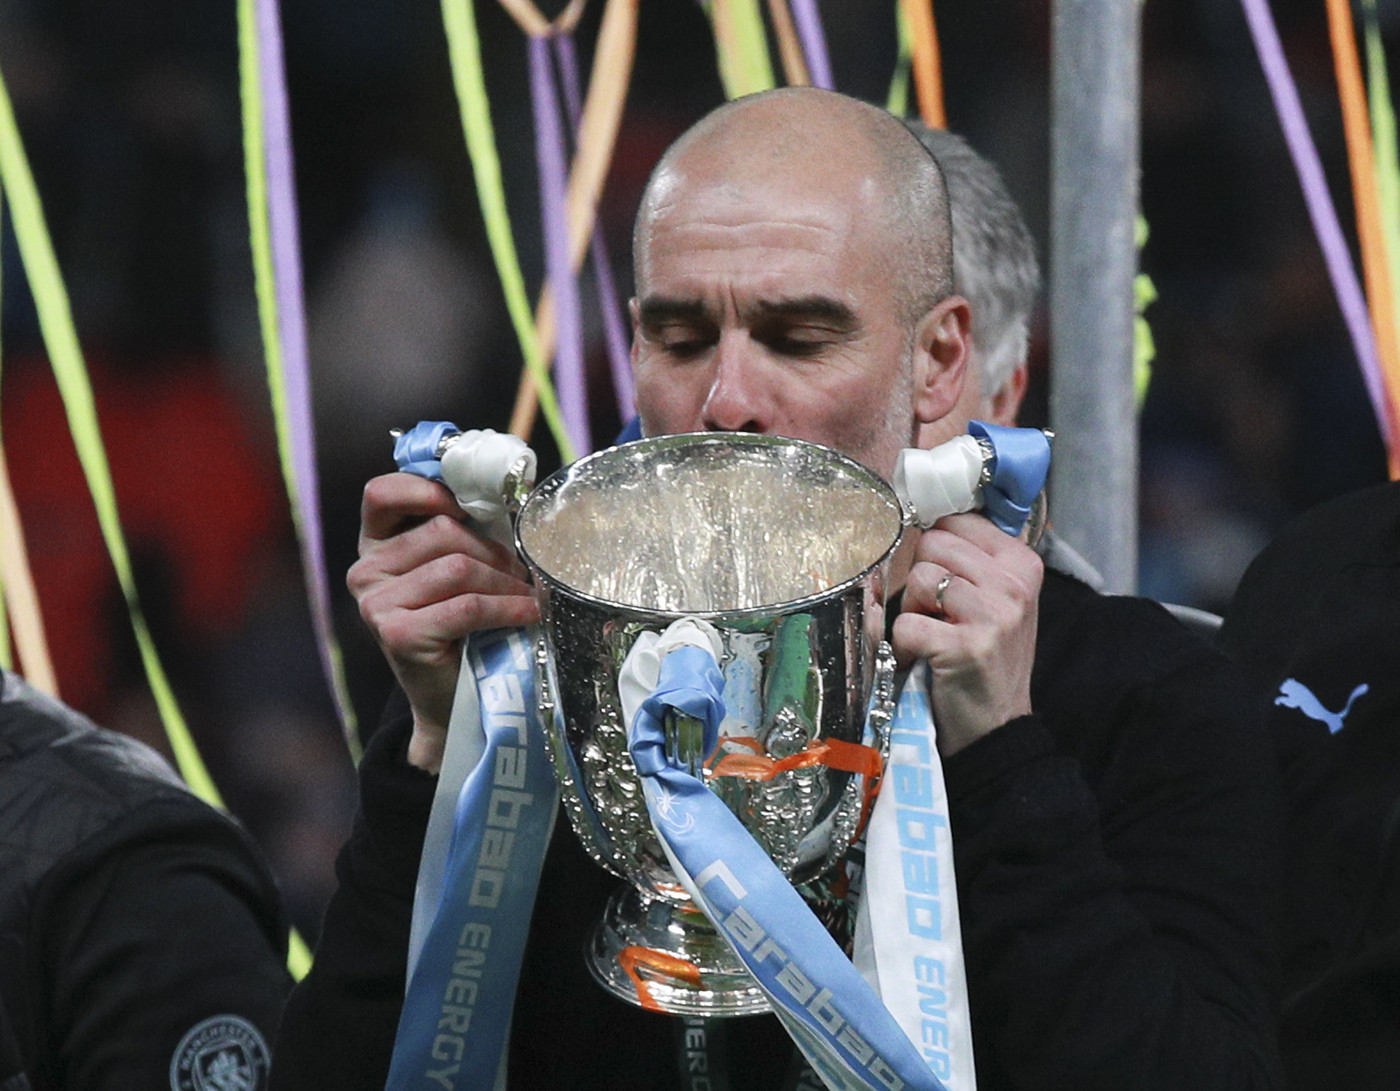 Coppa di Lega, trionfo City: 2-1 all’Aston Villa e terzo titolo di fila per Guardiola